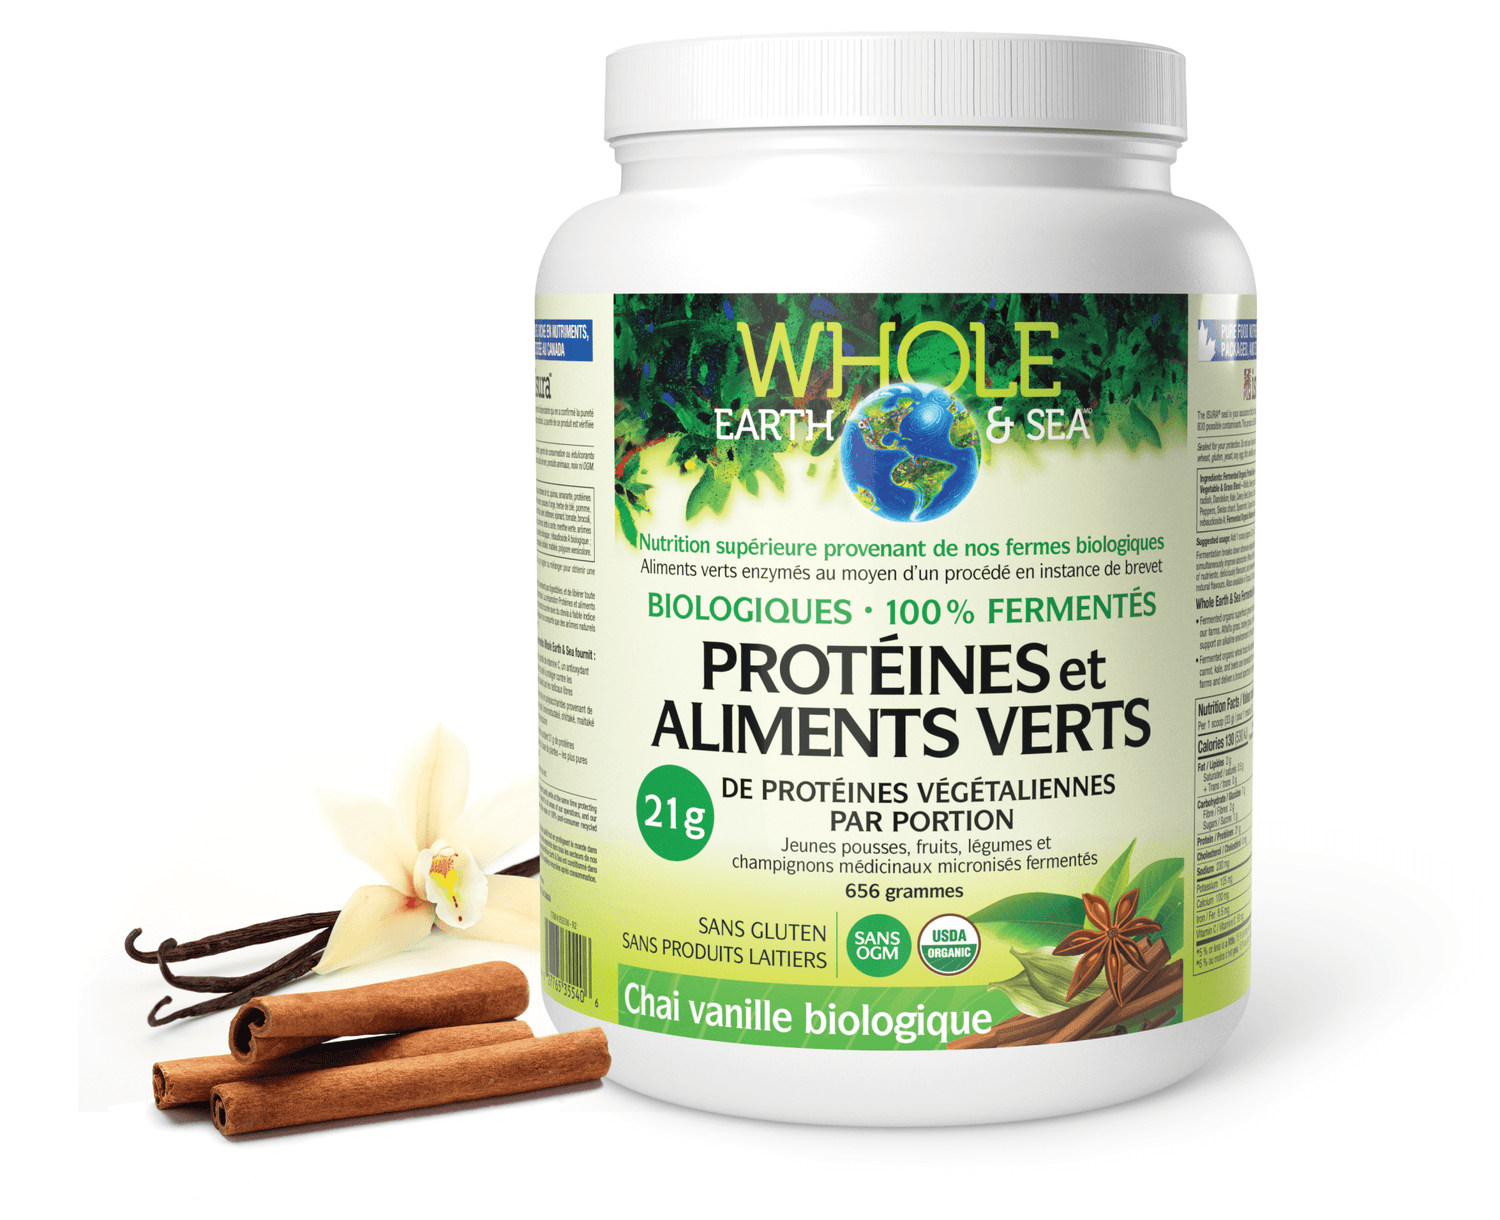 Protéines et aliments verts biologiques fermentés, chai vanille biologique, Whole Earth & Sea, Whole Earth & Sea®|v|image|35540